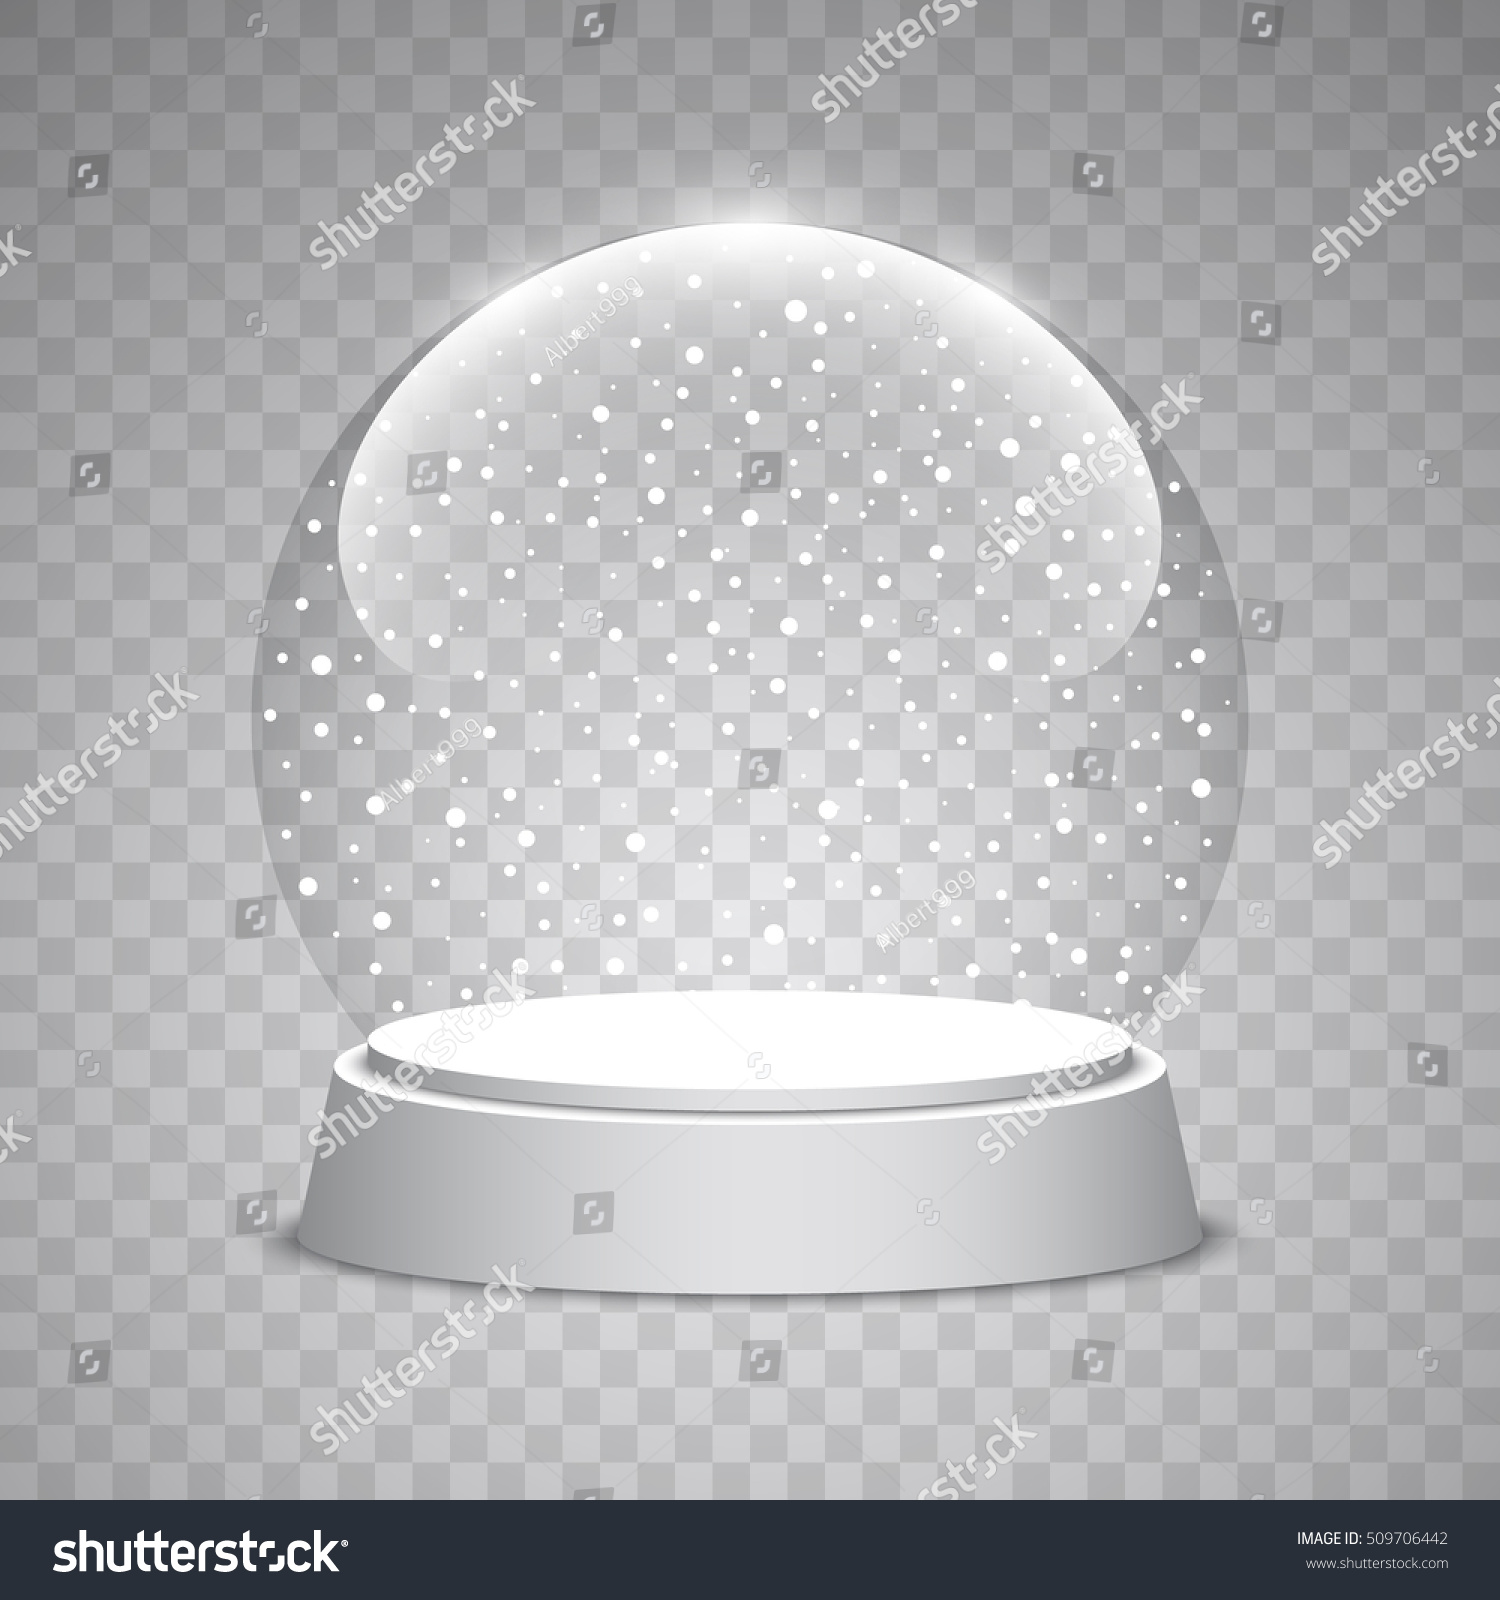 Снежный шар на прозрачном фоне для фотошопа